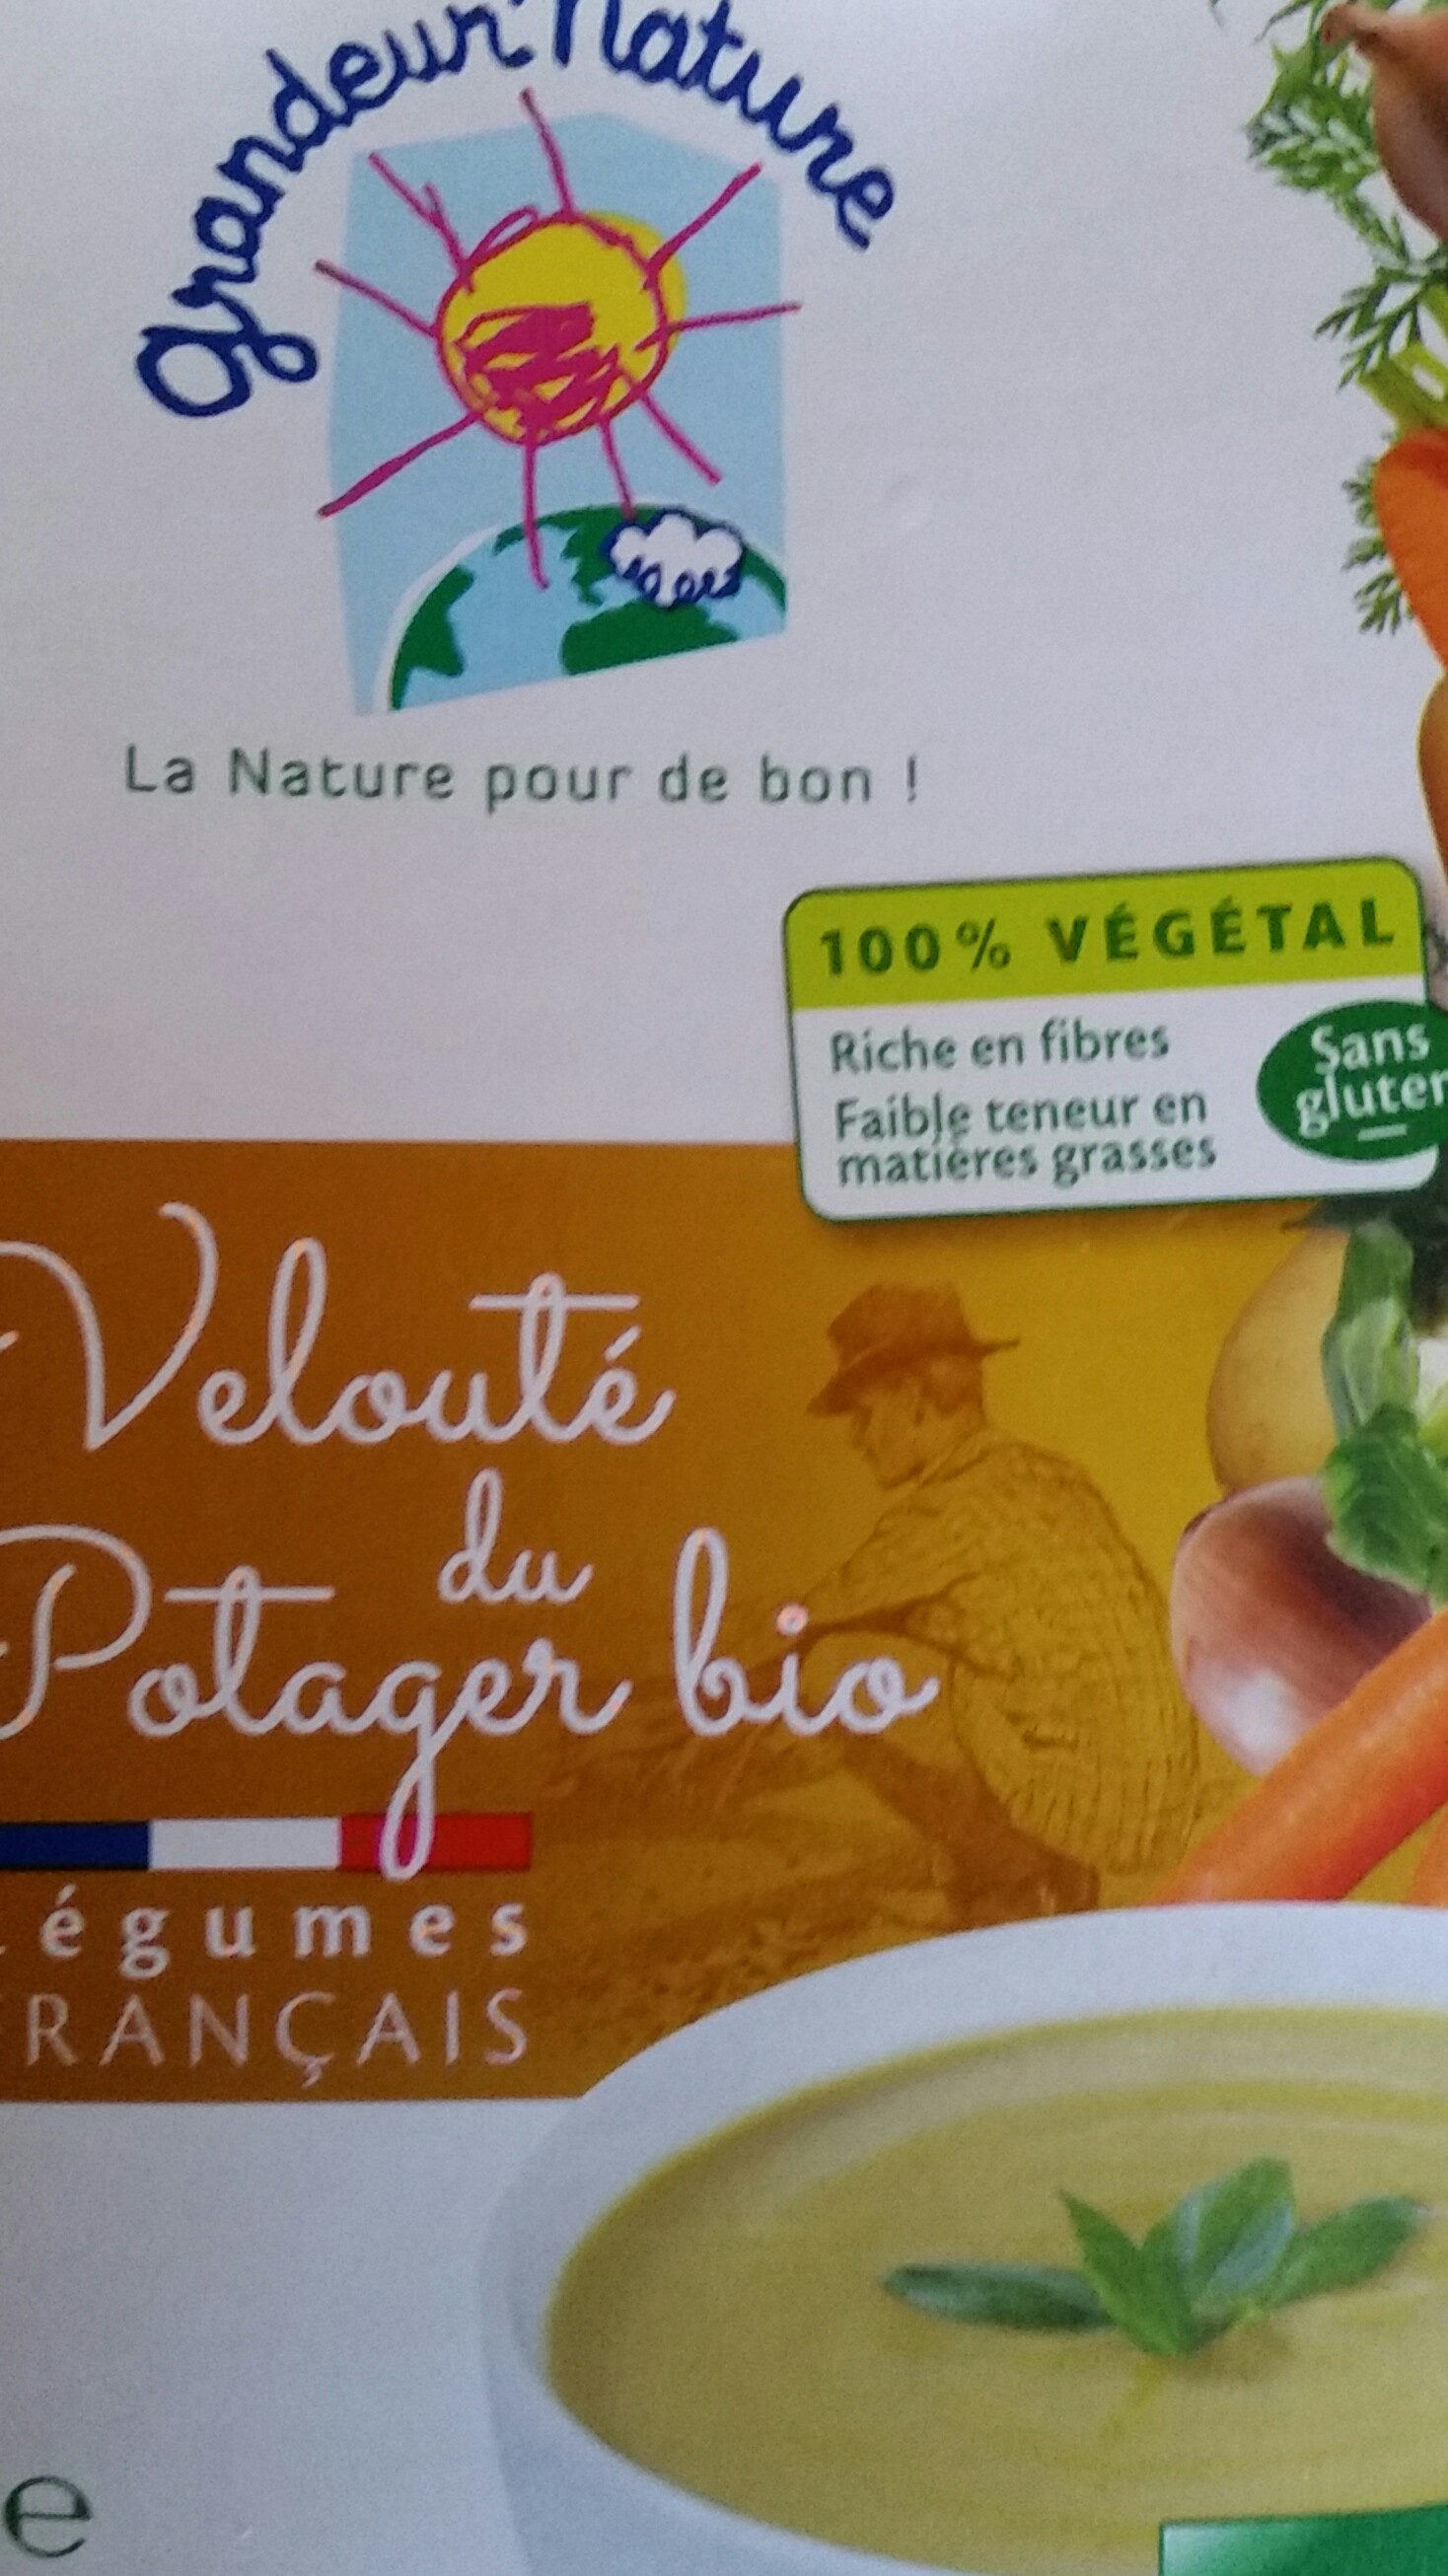 Velouté légumes variés du Potager bio - Product - fr